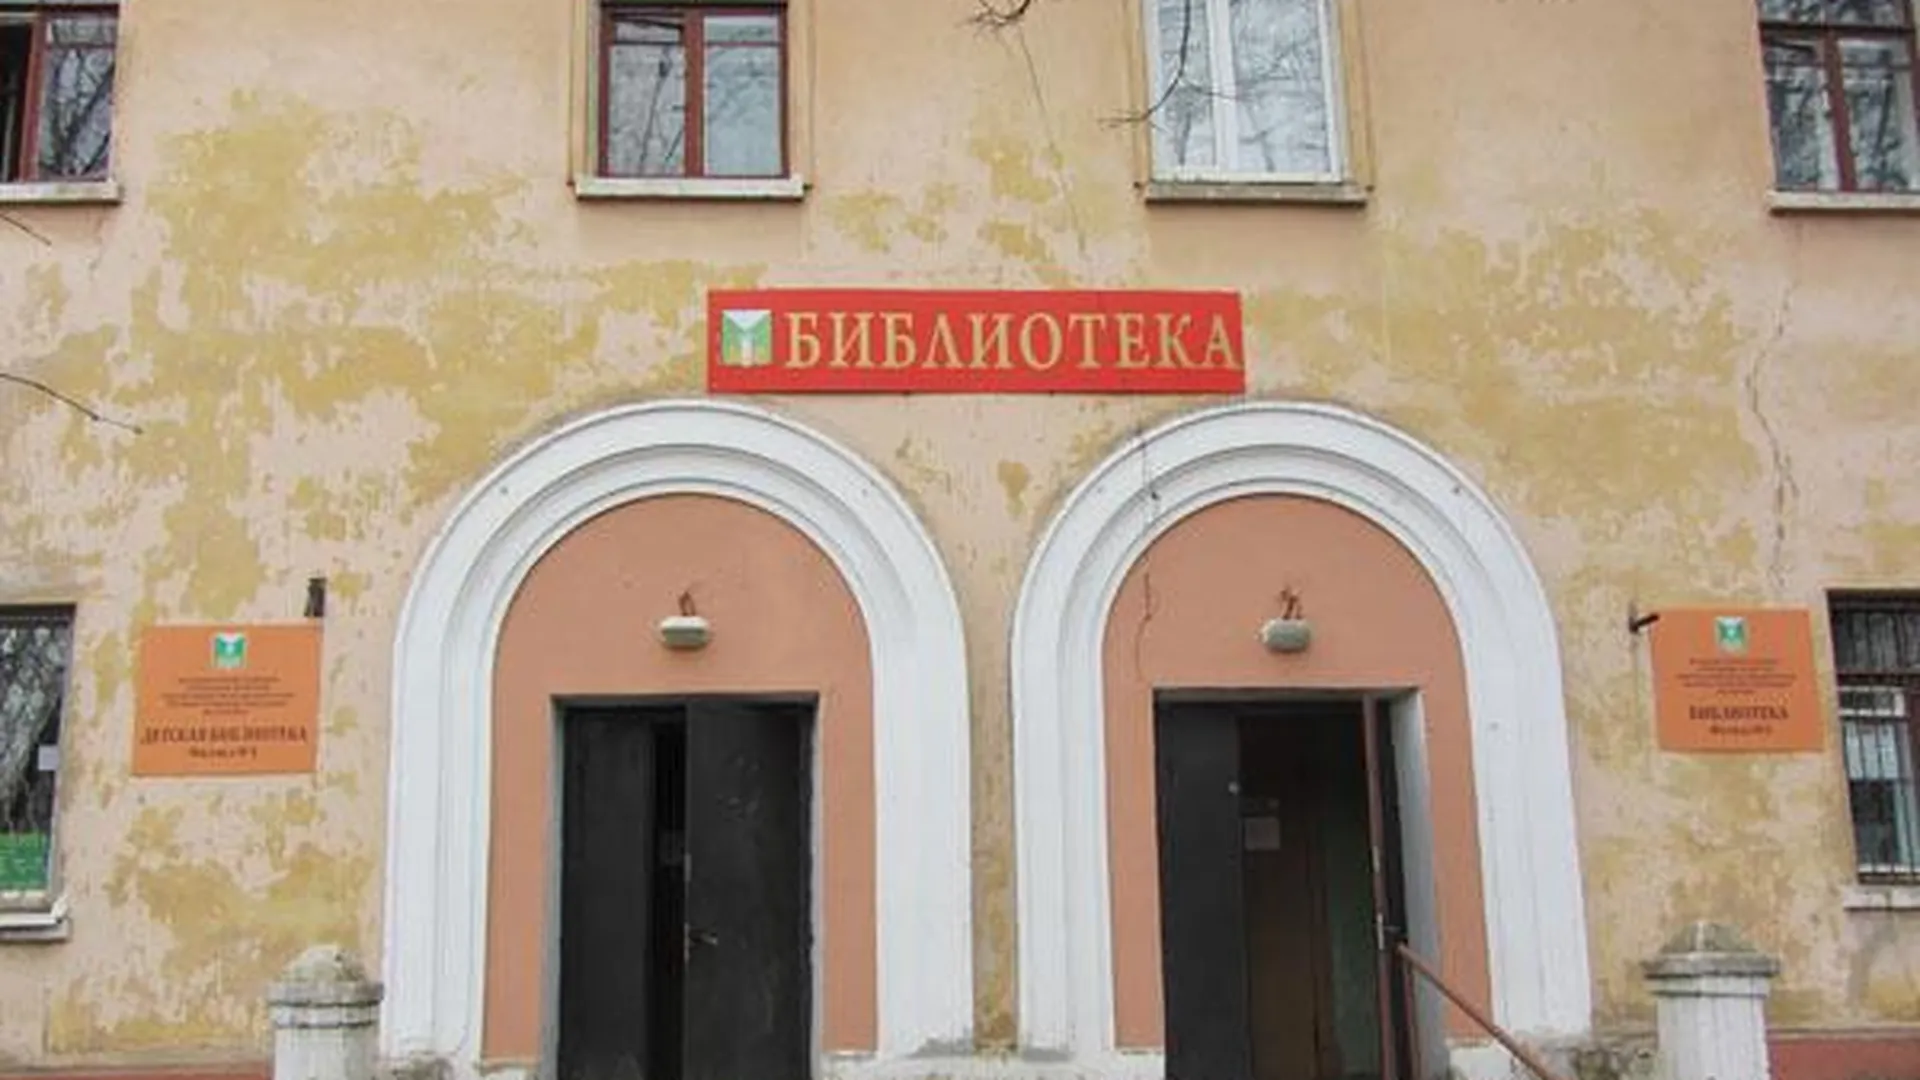 Библиотеку в Малаховке обещают переселить из подвала